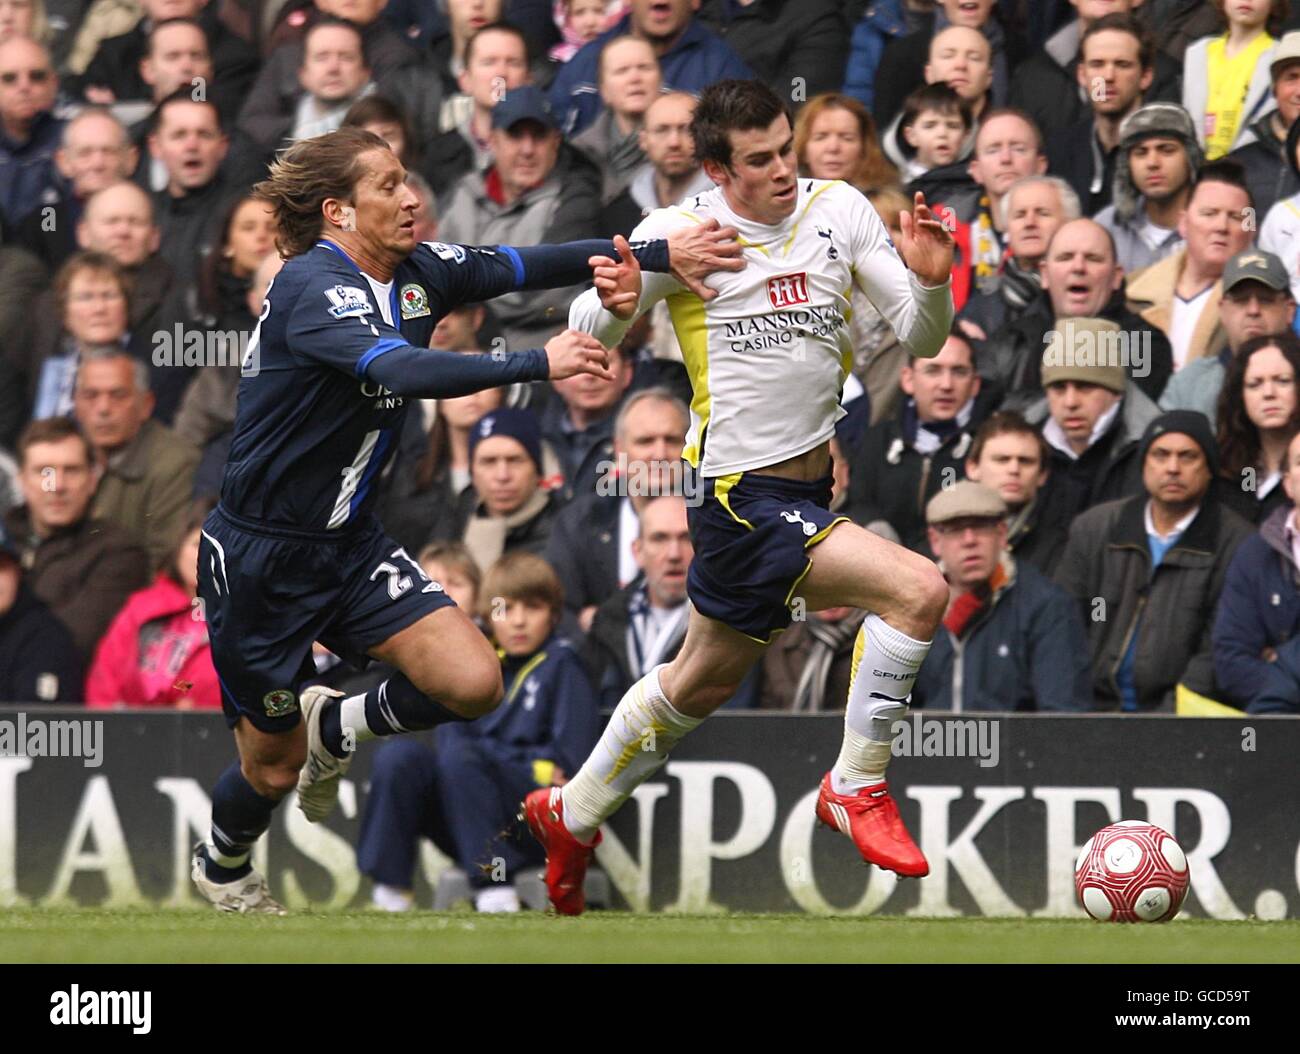 Soccer - Barclays Premier League - Tottenham Hotspur v Blackburn Rovers - White Hart Lane. Tottenham Hotspur's Gareth Bale (right) and Blackburn Rovers' Michel Salgado (left) battle for the ball Stock Photo